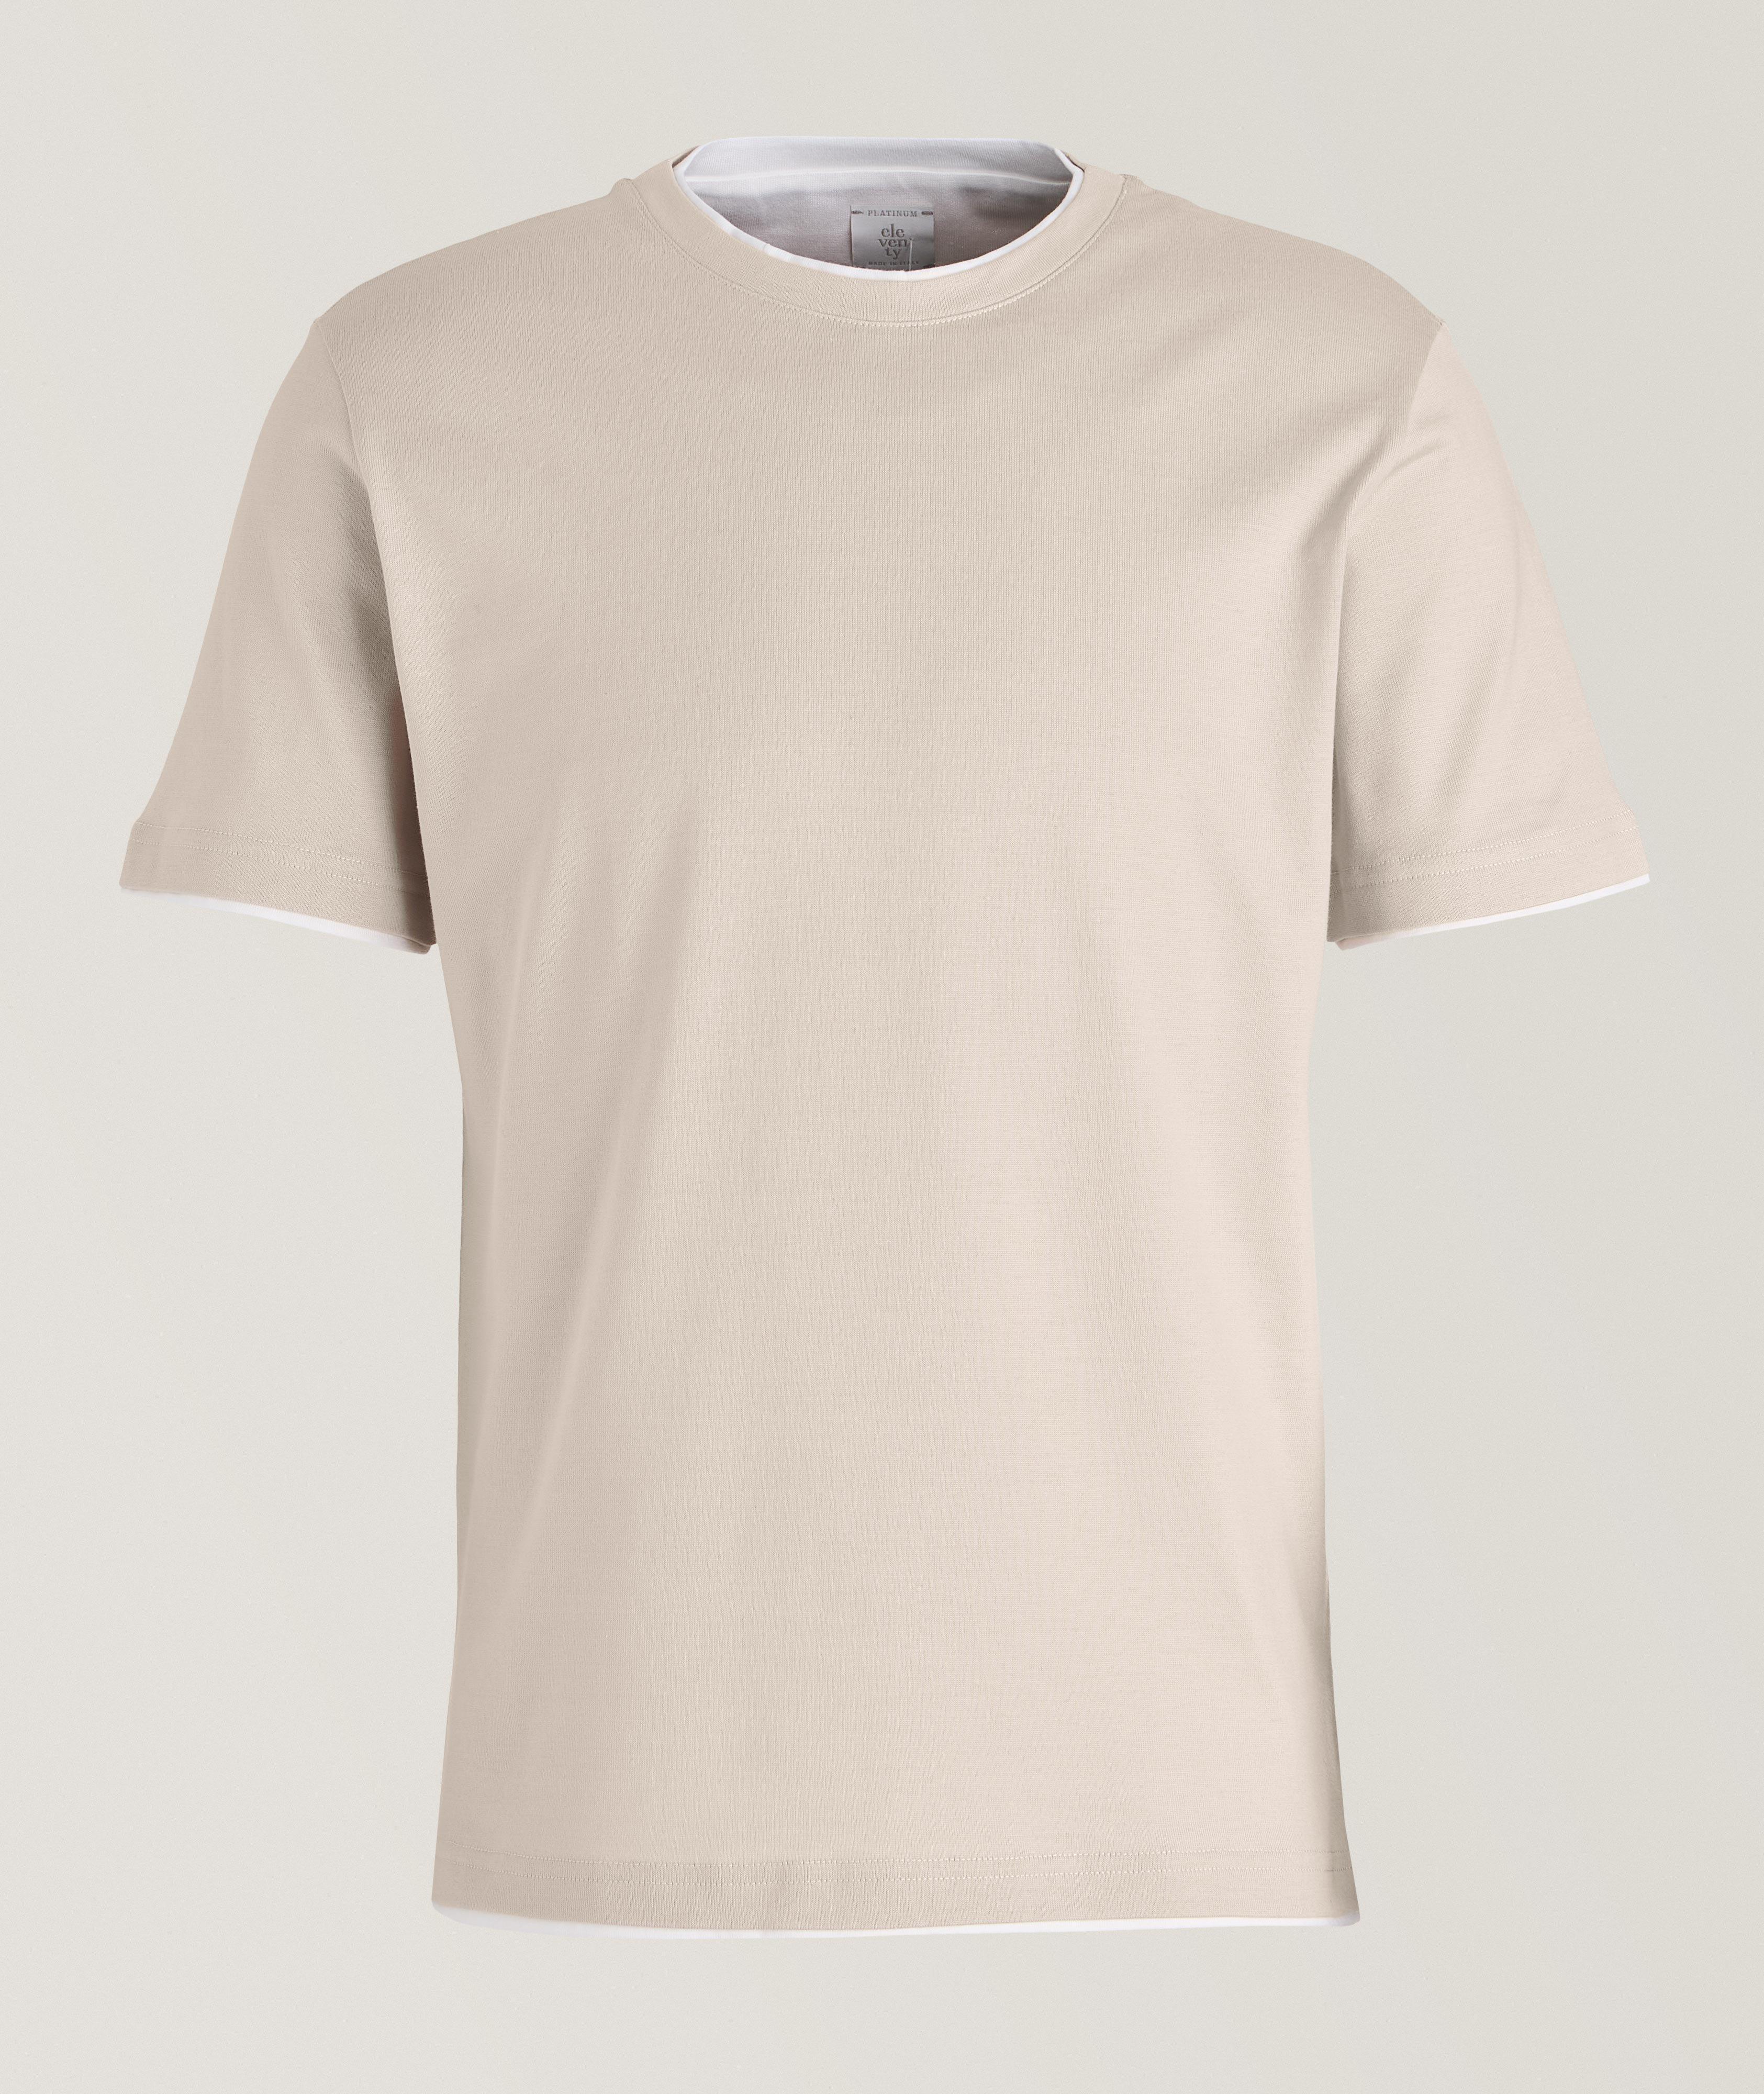 Platinum Collection Double Layer Contrast Trim Cotton T-Shirt